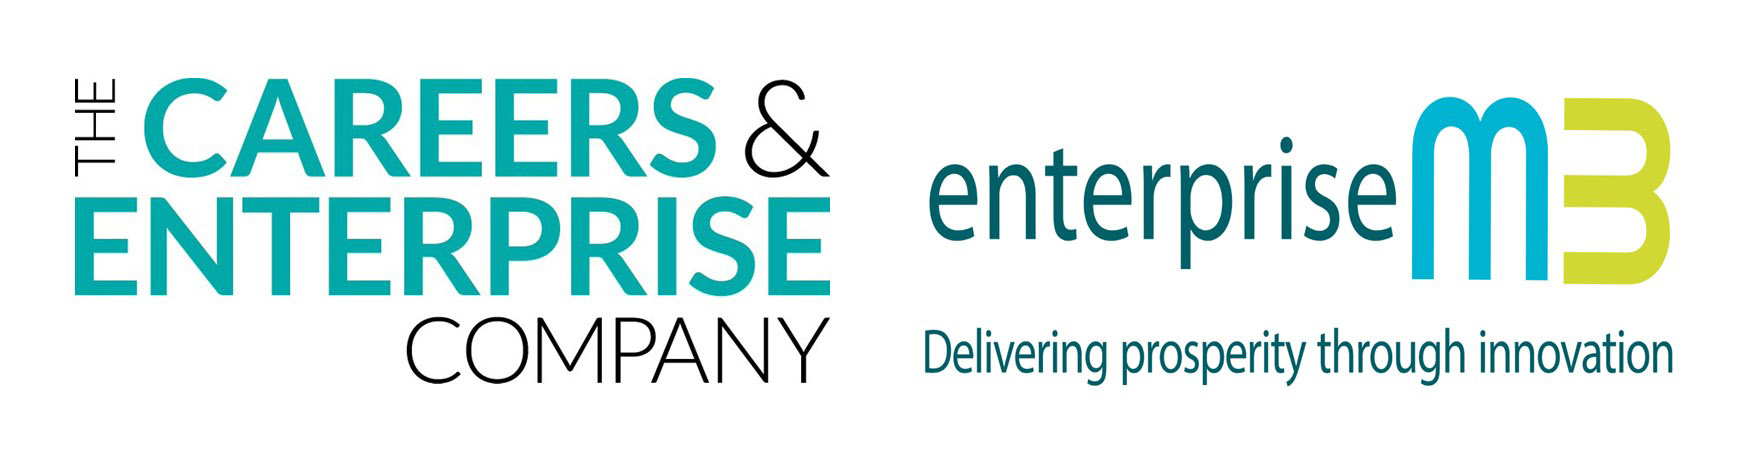 Careers & Enterprise Company and EM3 logos